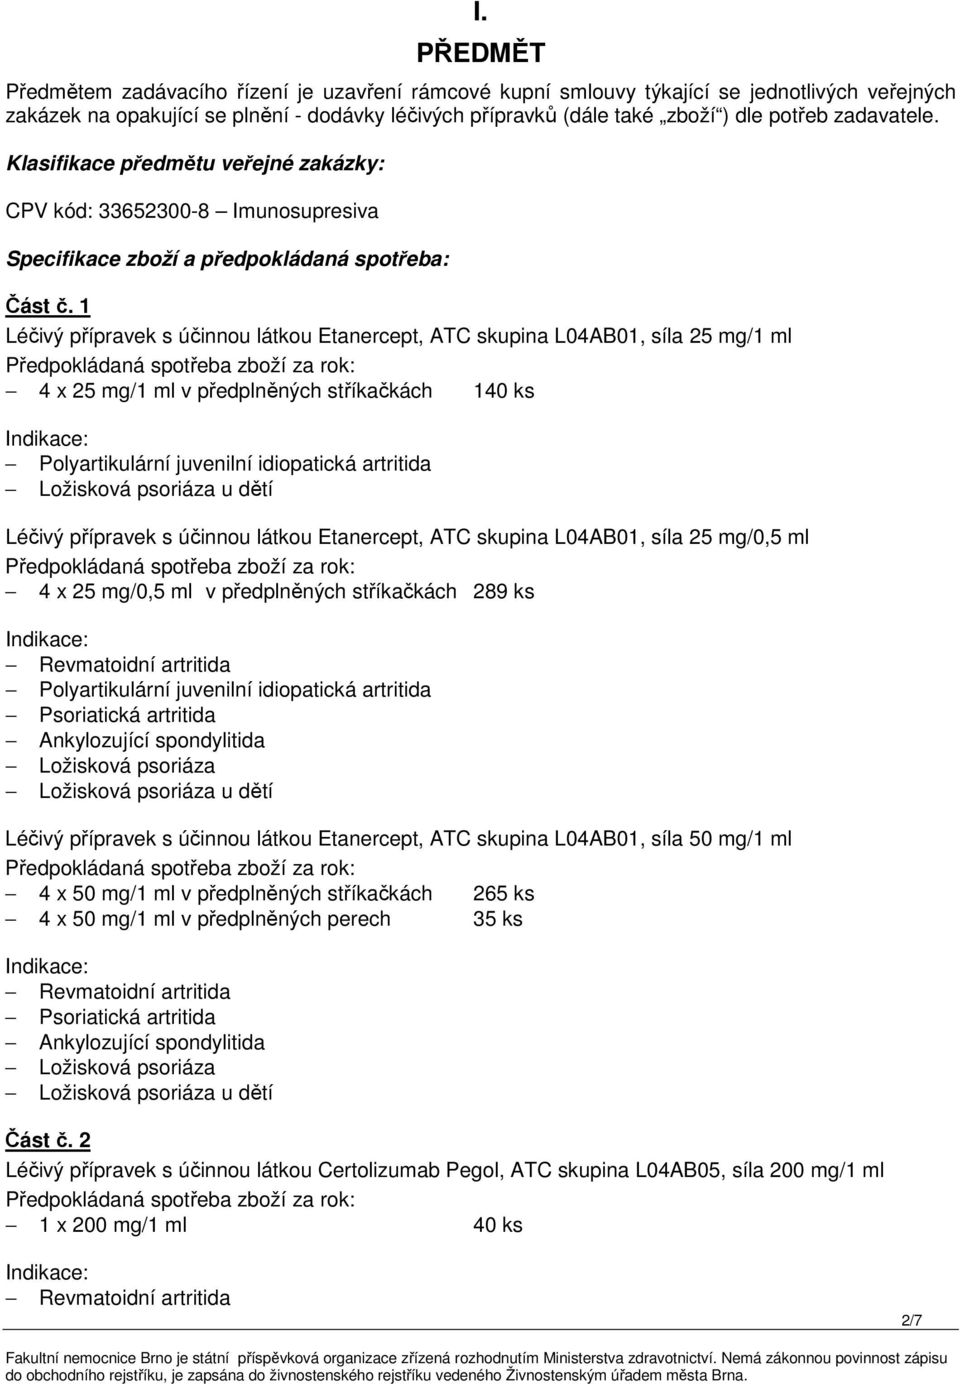 1 Léčivý přípravek s účinnou látkou Etanercept, ATC skupina L04AB01, síla 25 mg/1 ml 4 x 25 mg/1 ml v předplněných stříkačkách 140 ks Polyartikulární juvenilní idiopatická artritida Ložisková